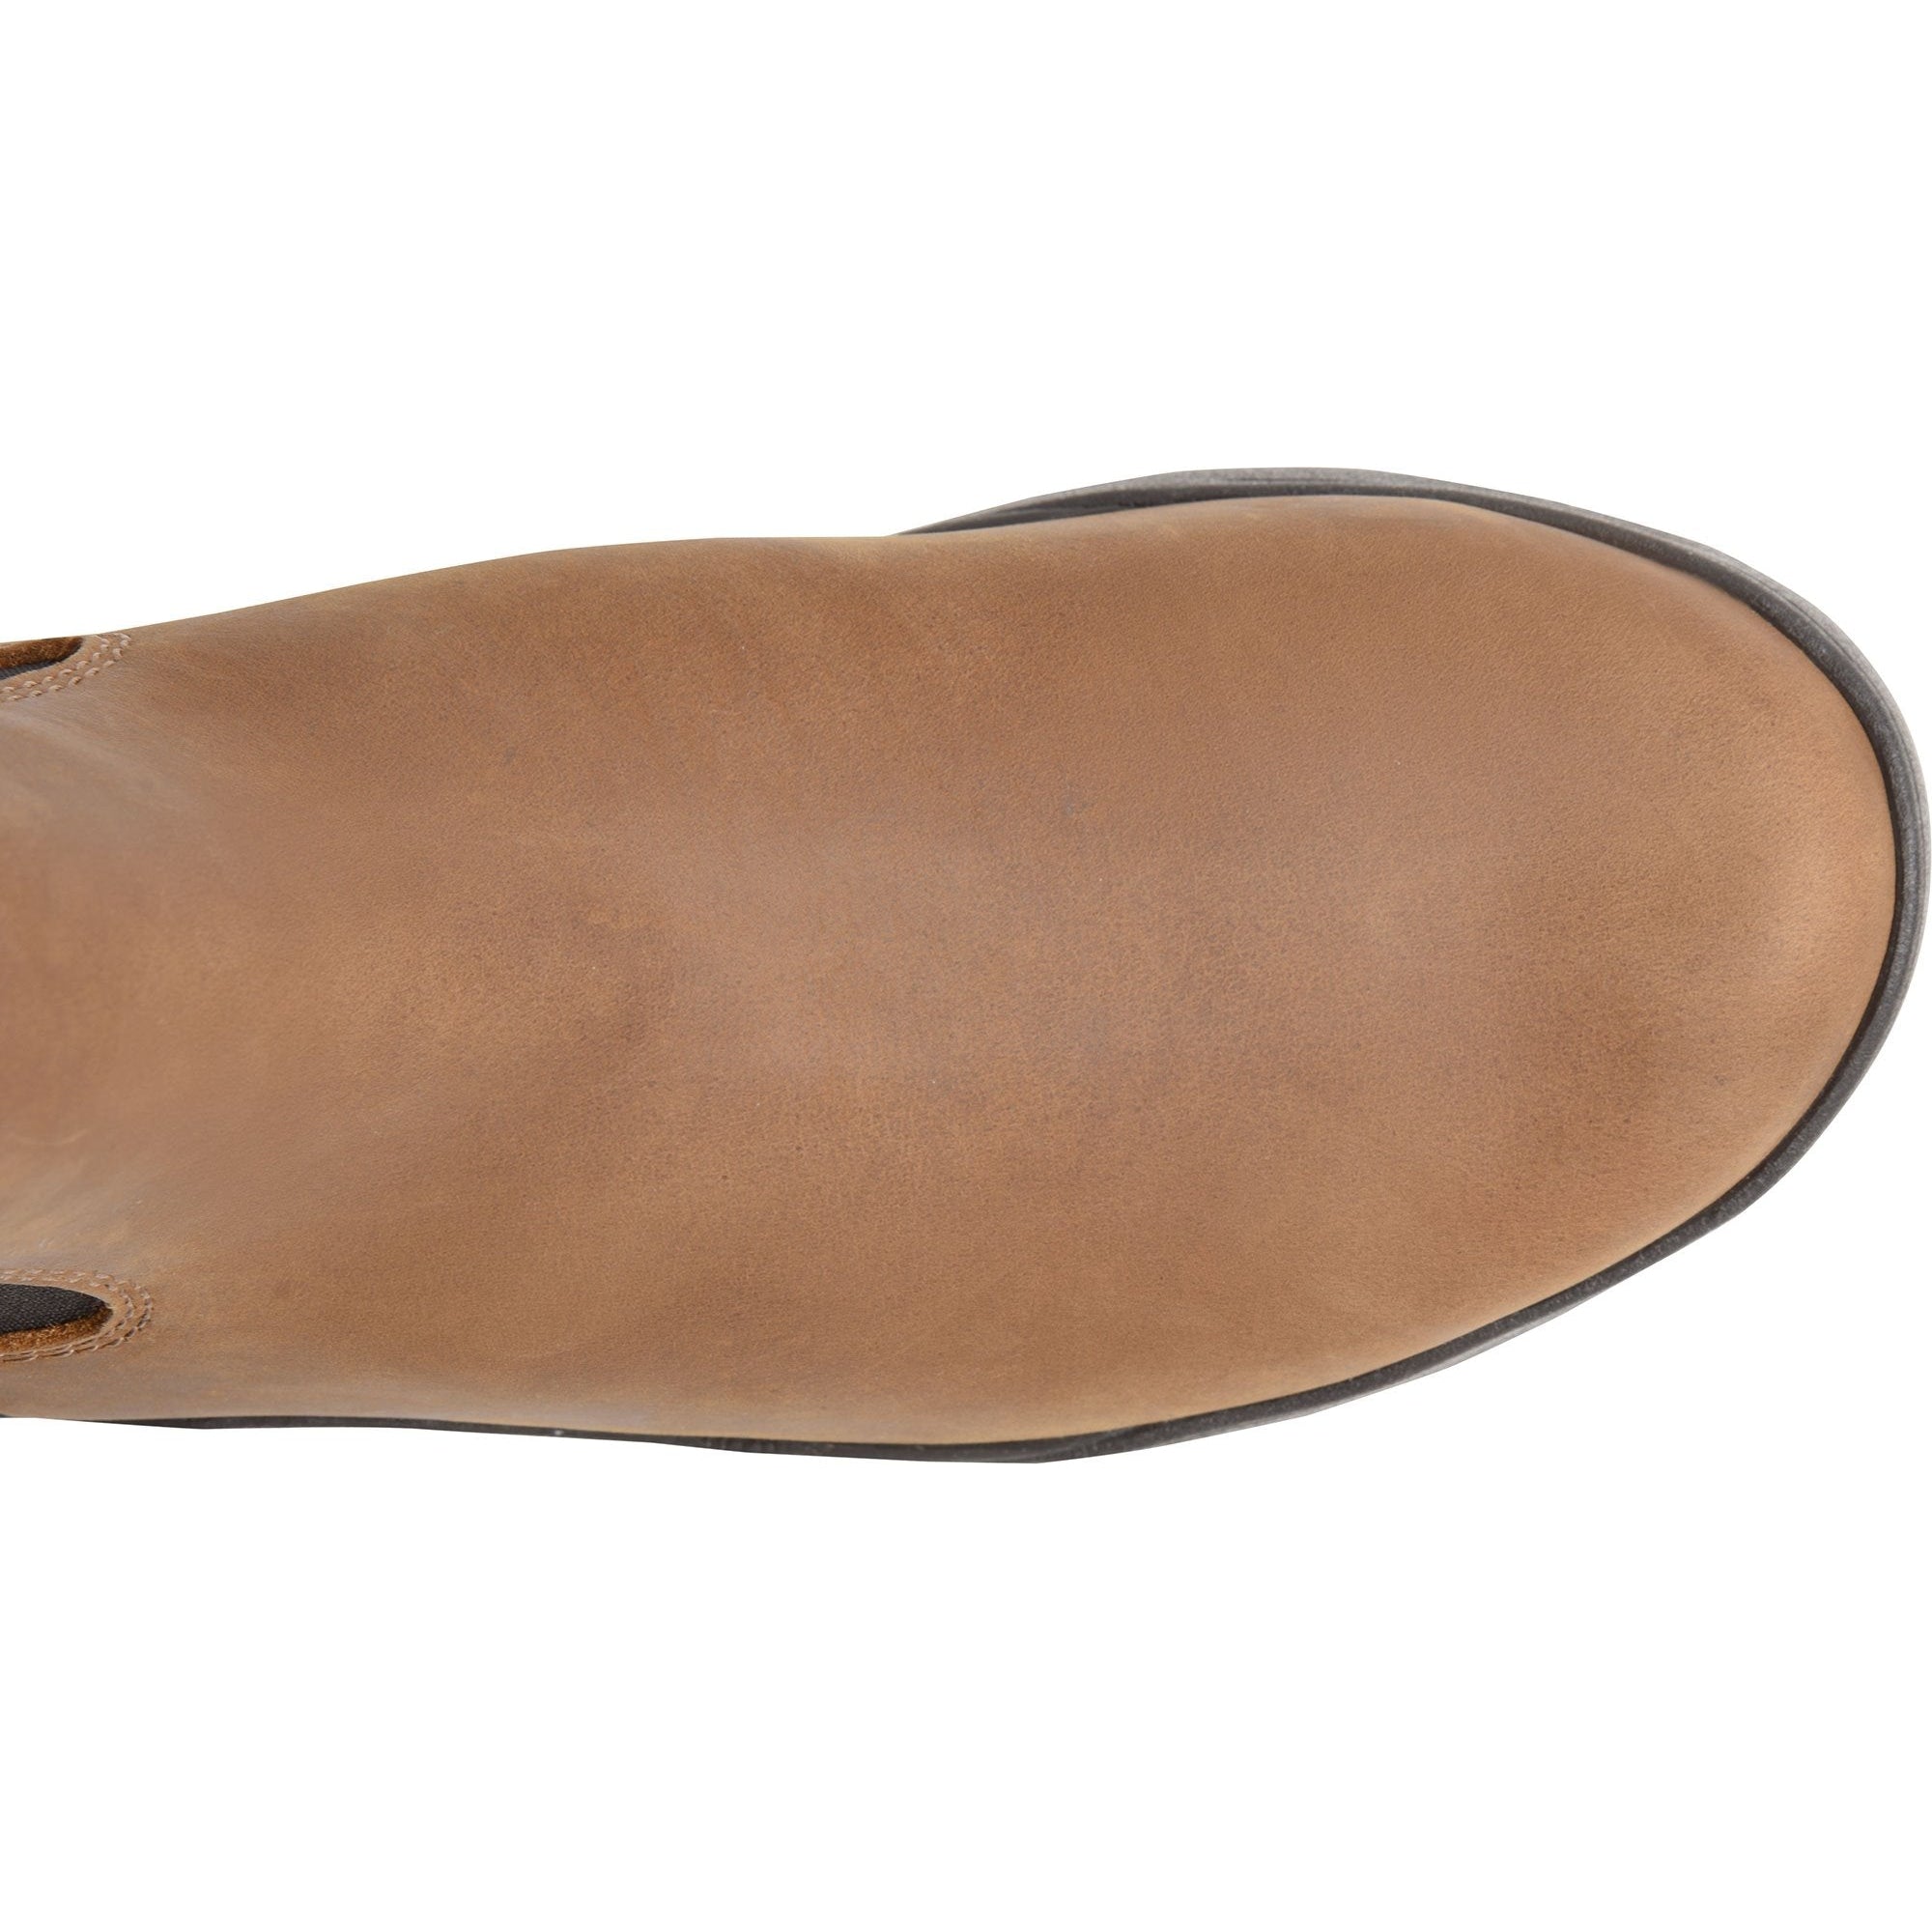 Carolina Men's Chelsea Comp Toe Align Cogent Work Shoe - Brown - CA4564  - Overlook Boots